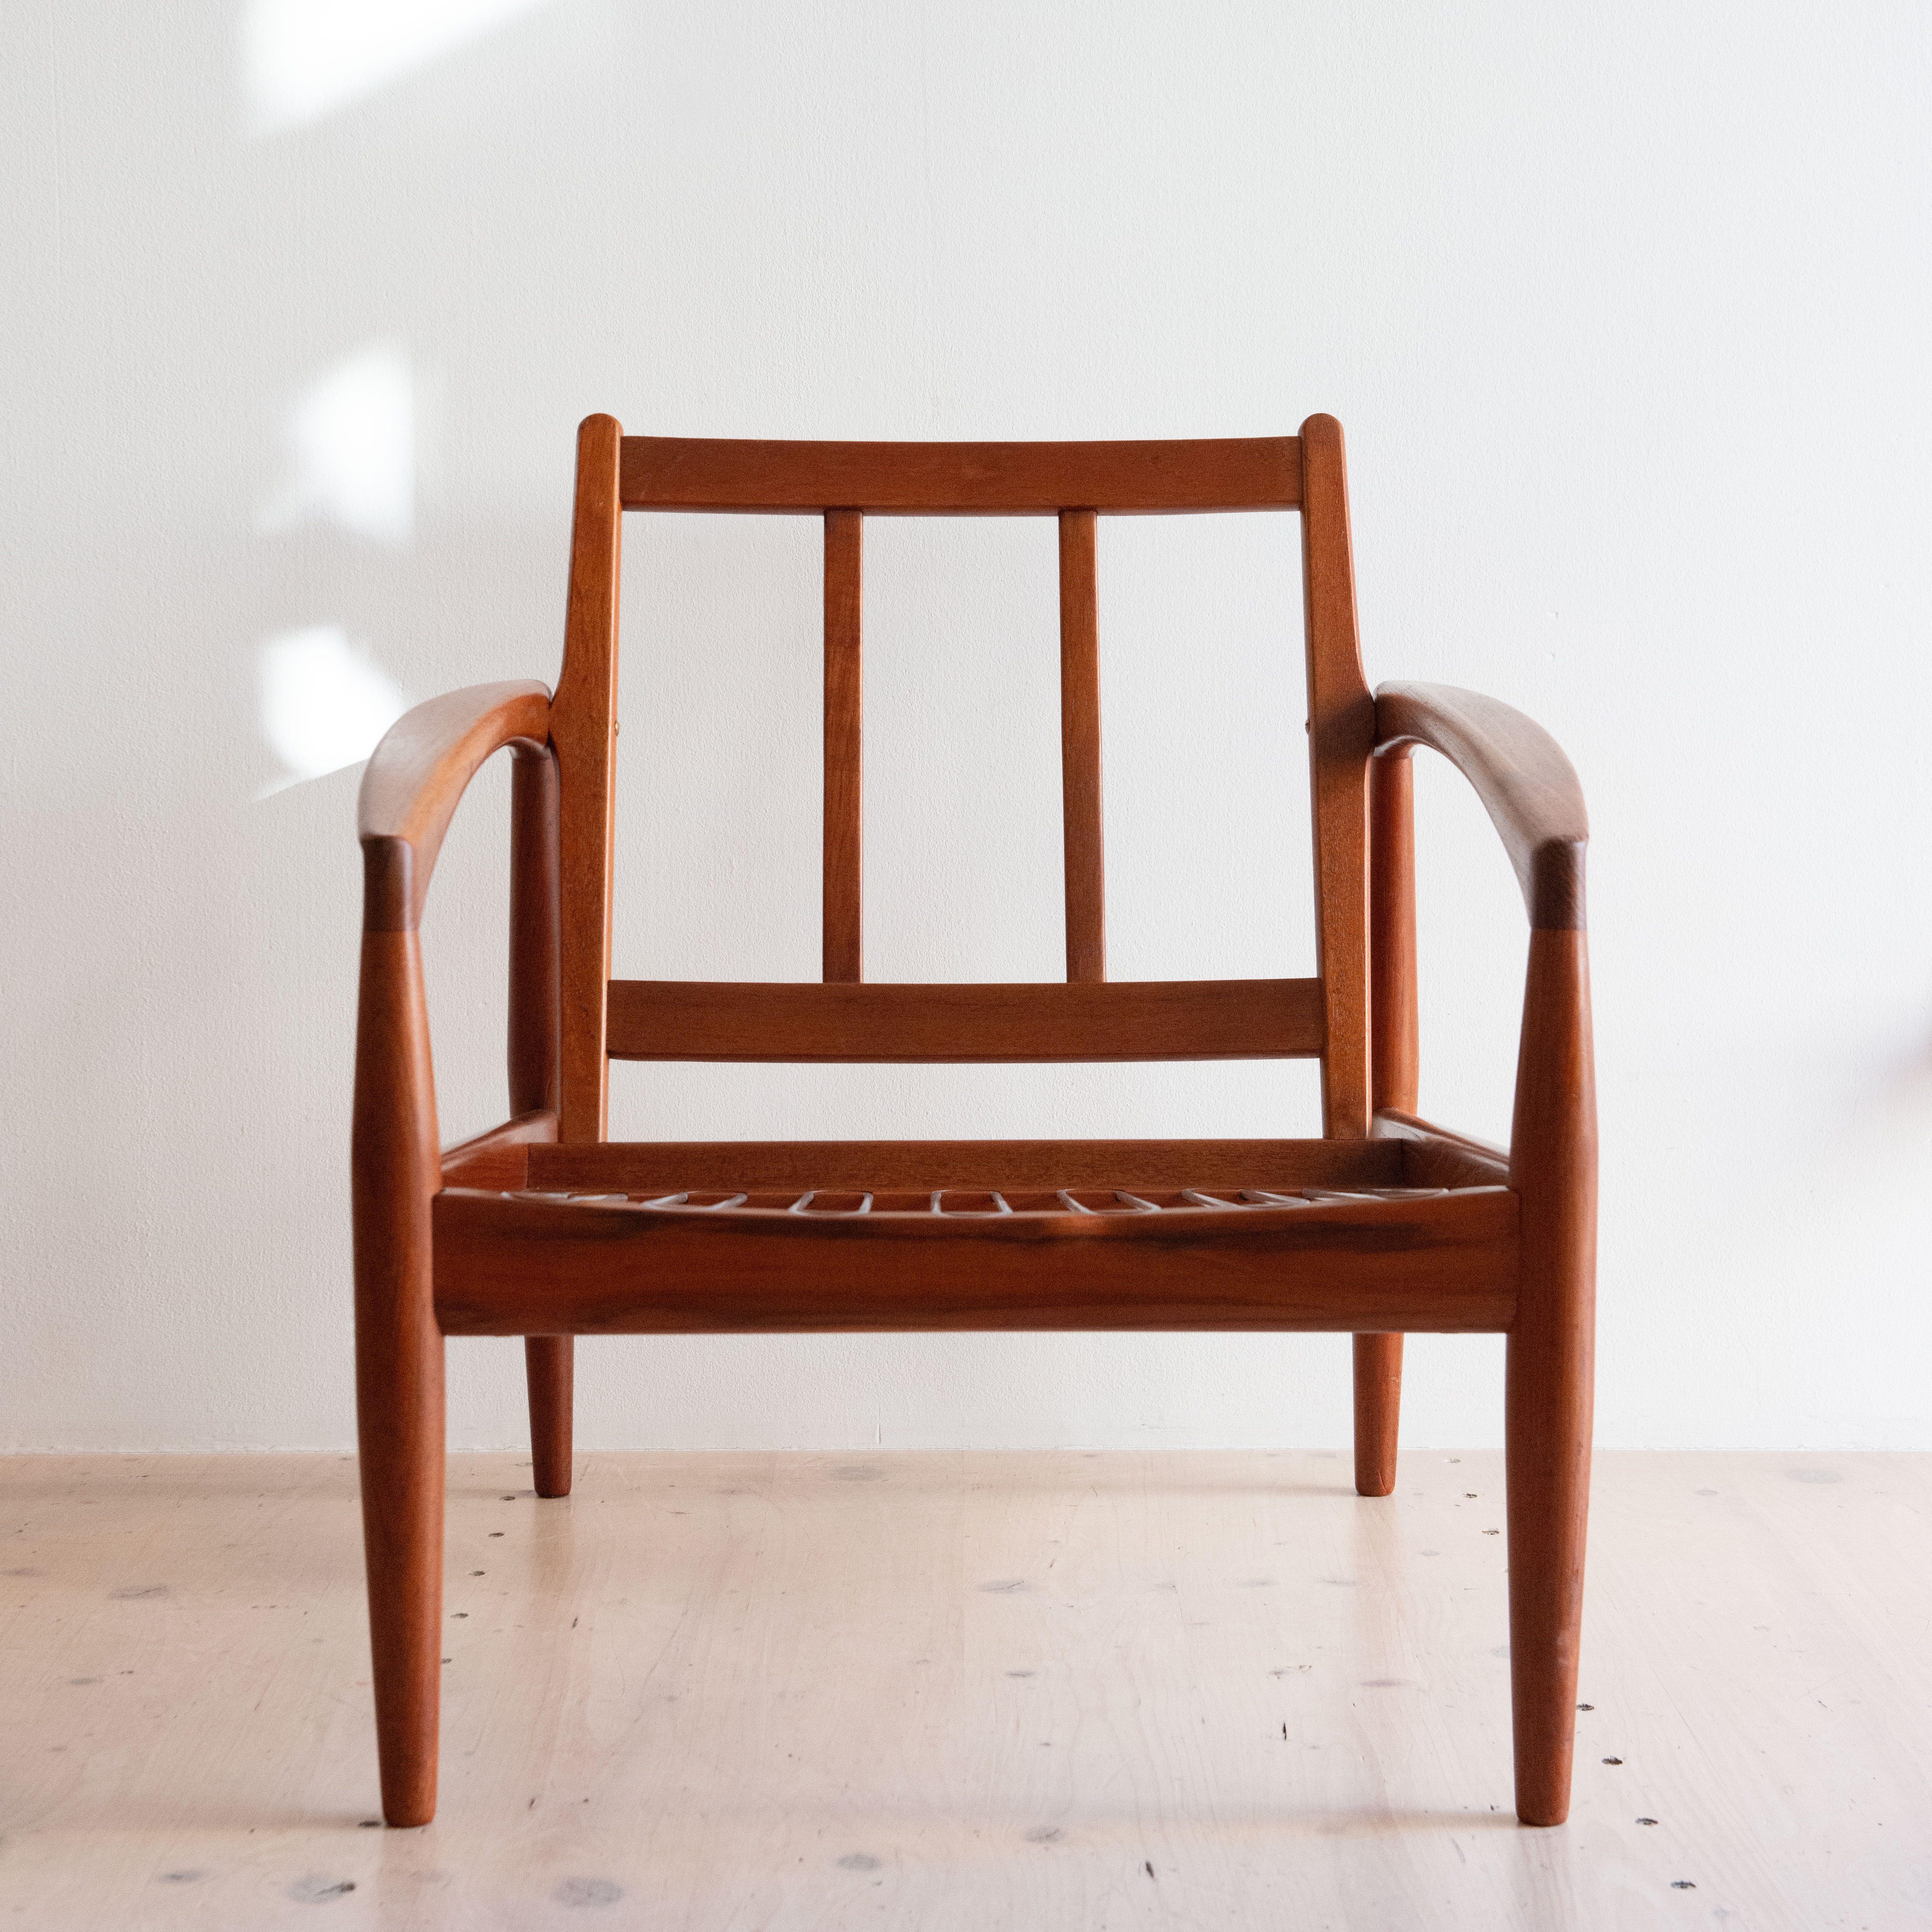 Paperknife Lounge Chairs in Teak, by Kai Kristiansen. Produced by Magnus Olesen. Available at heyday möbel. Grubenstrasse 19, 8045 Zürich, Switzerland.